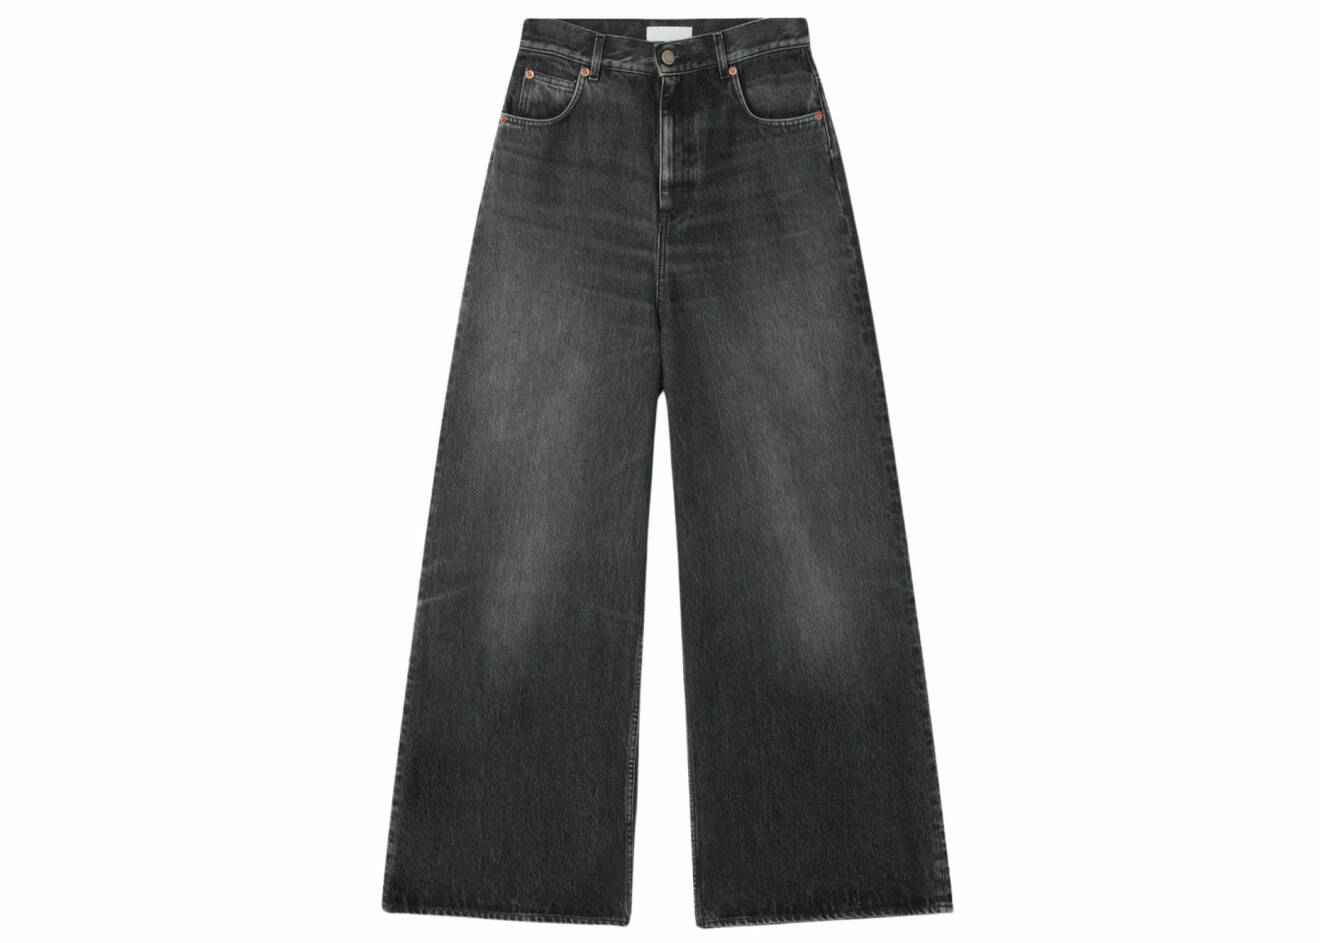 Jeans i ekologisk bomull, w 25–30, 3 200 kr, Teurn.